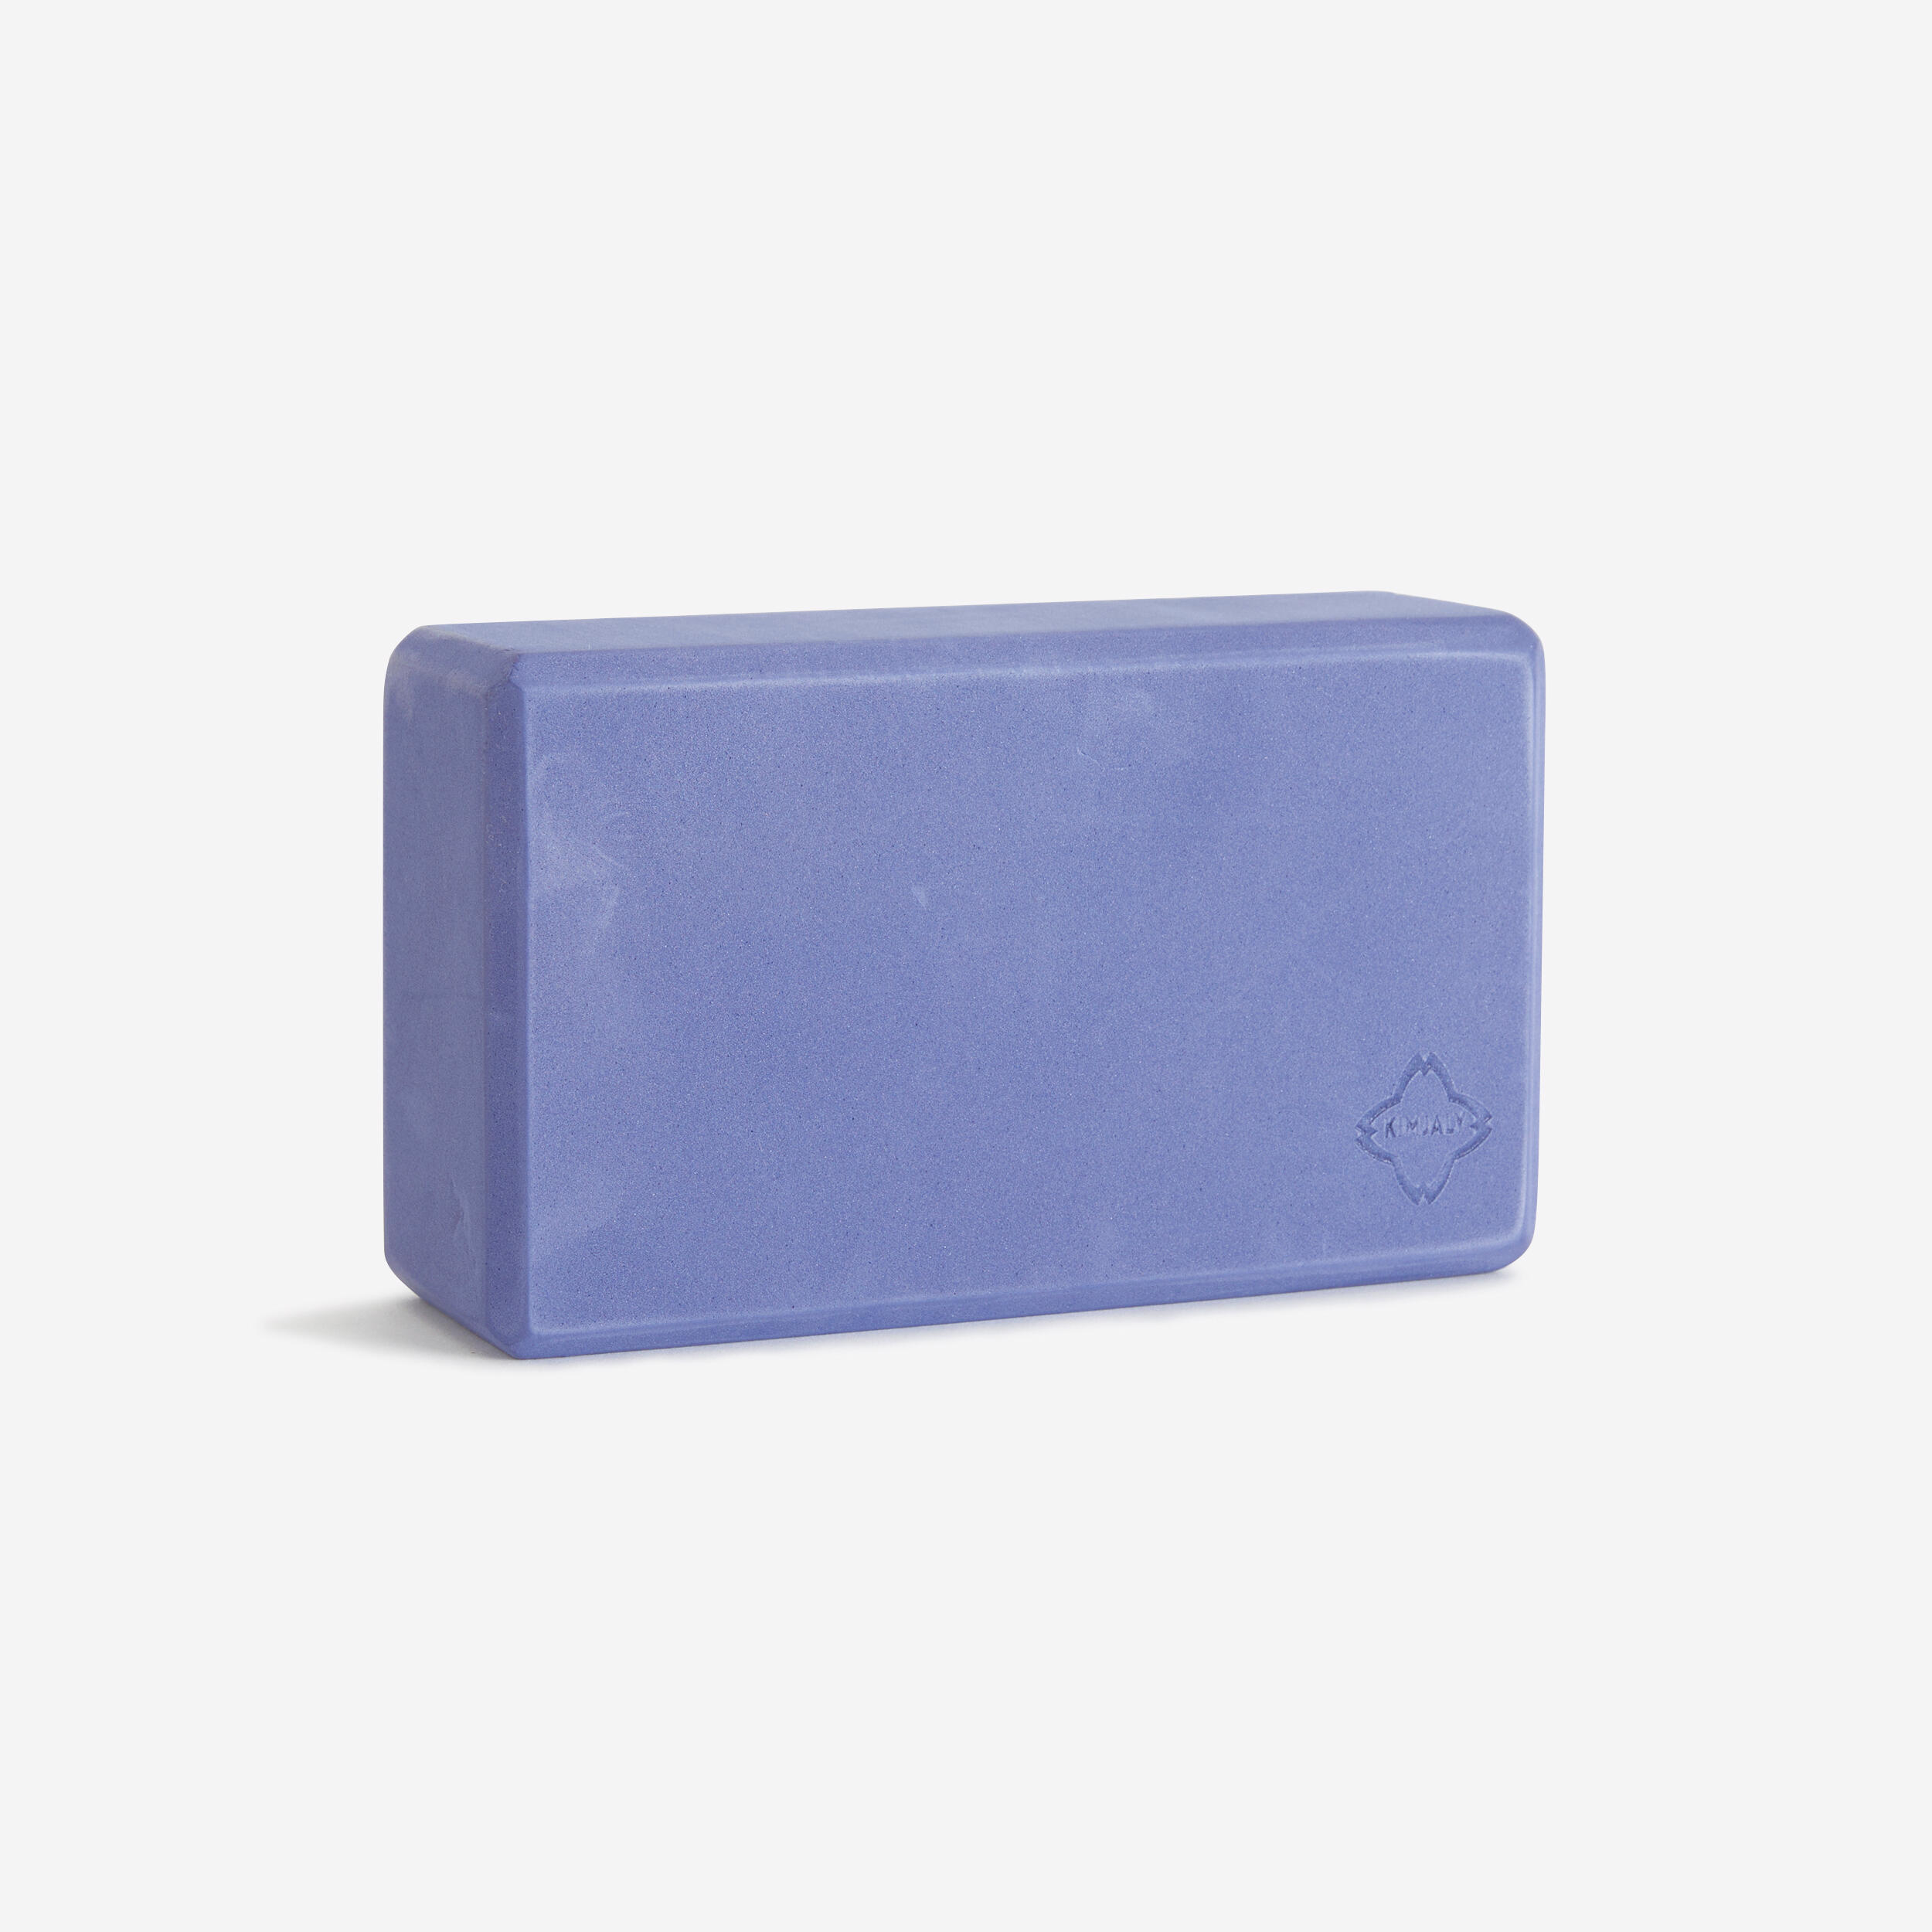 Yoga Foam Block - Blue 1/2